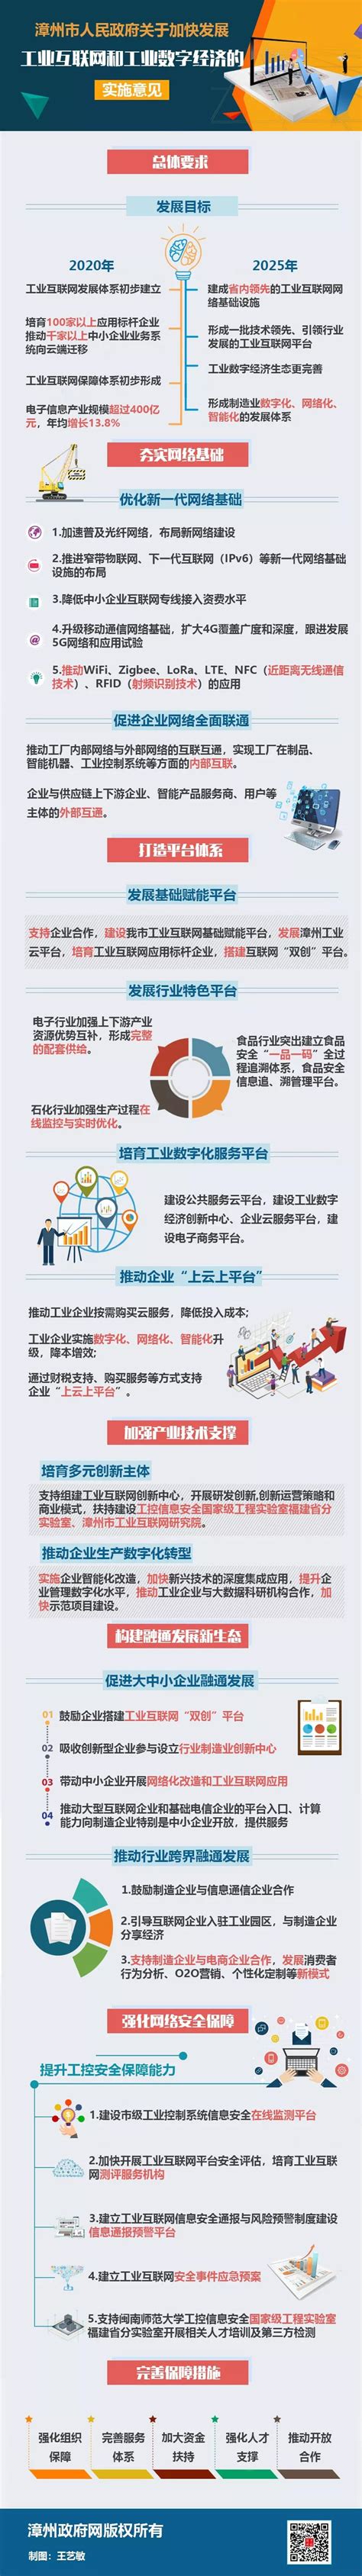 漳州市人民政府关于加快发展工业互联网和工业数字经济的实施意见_企业